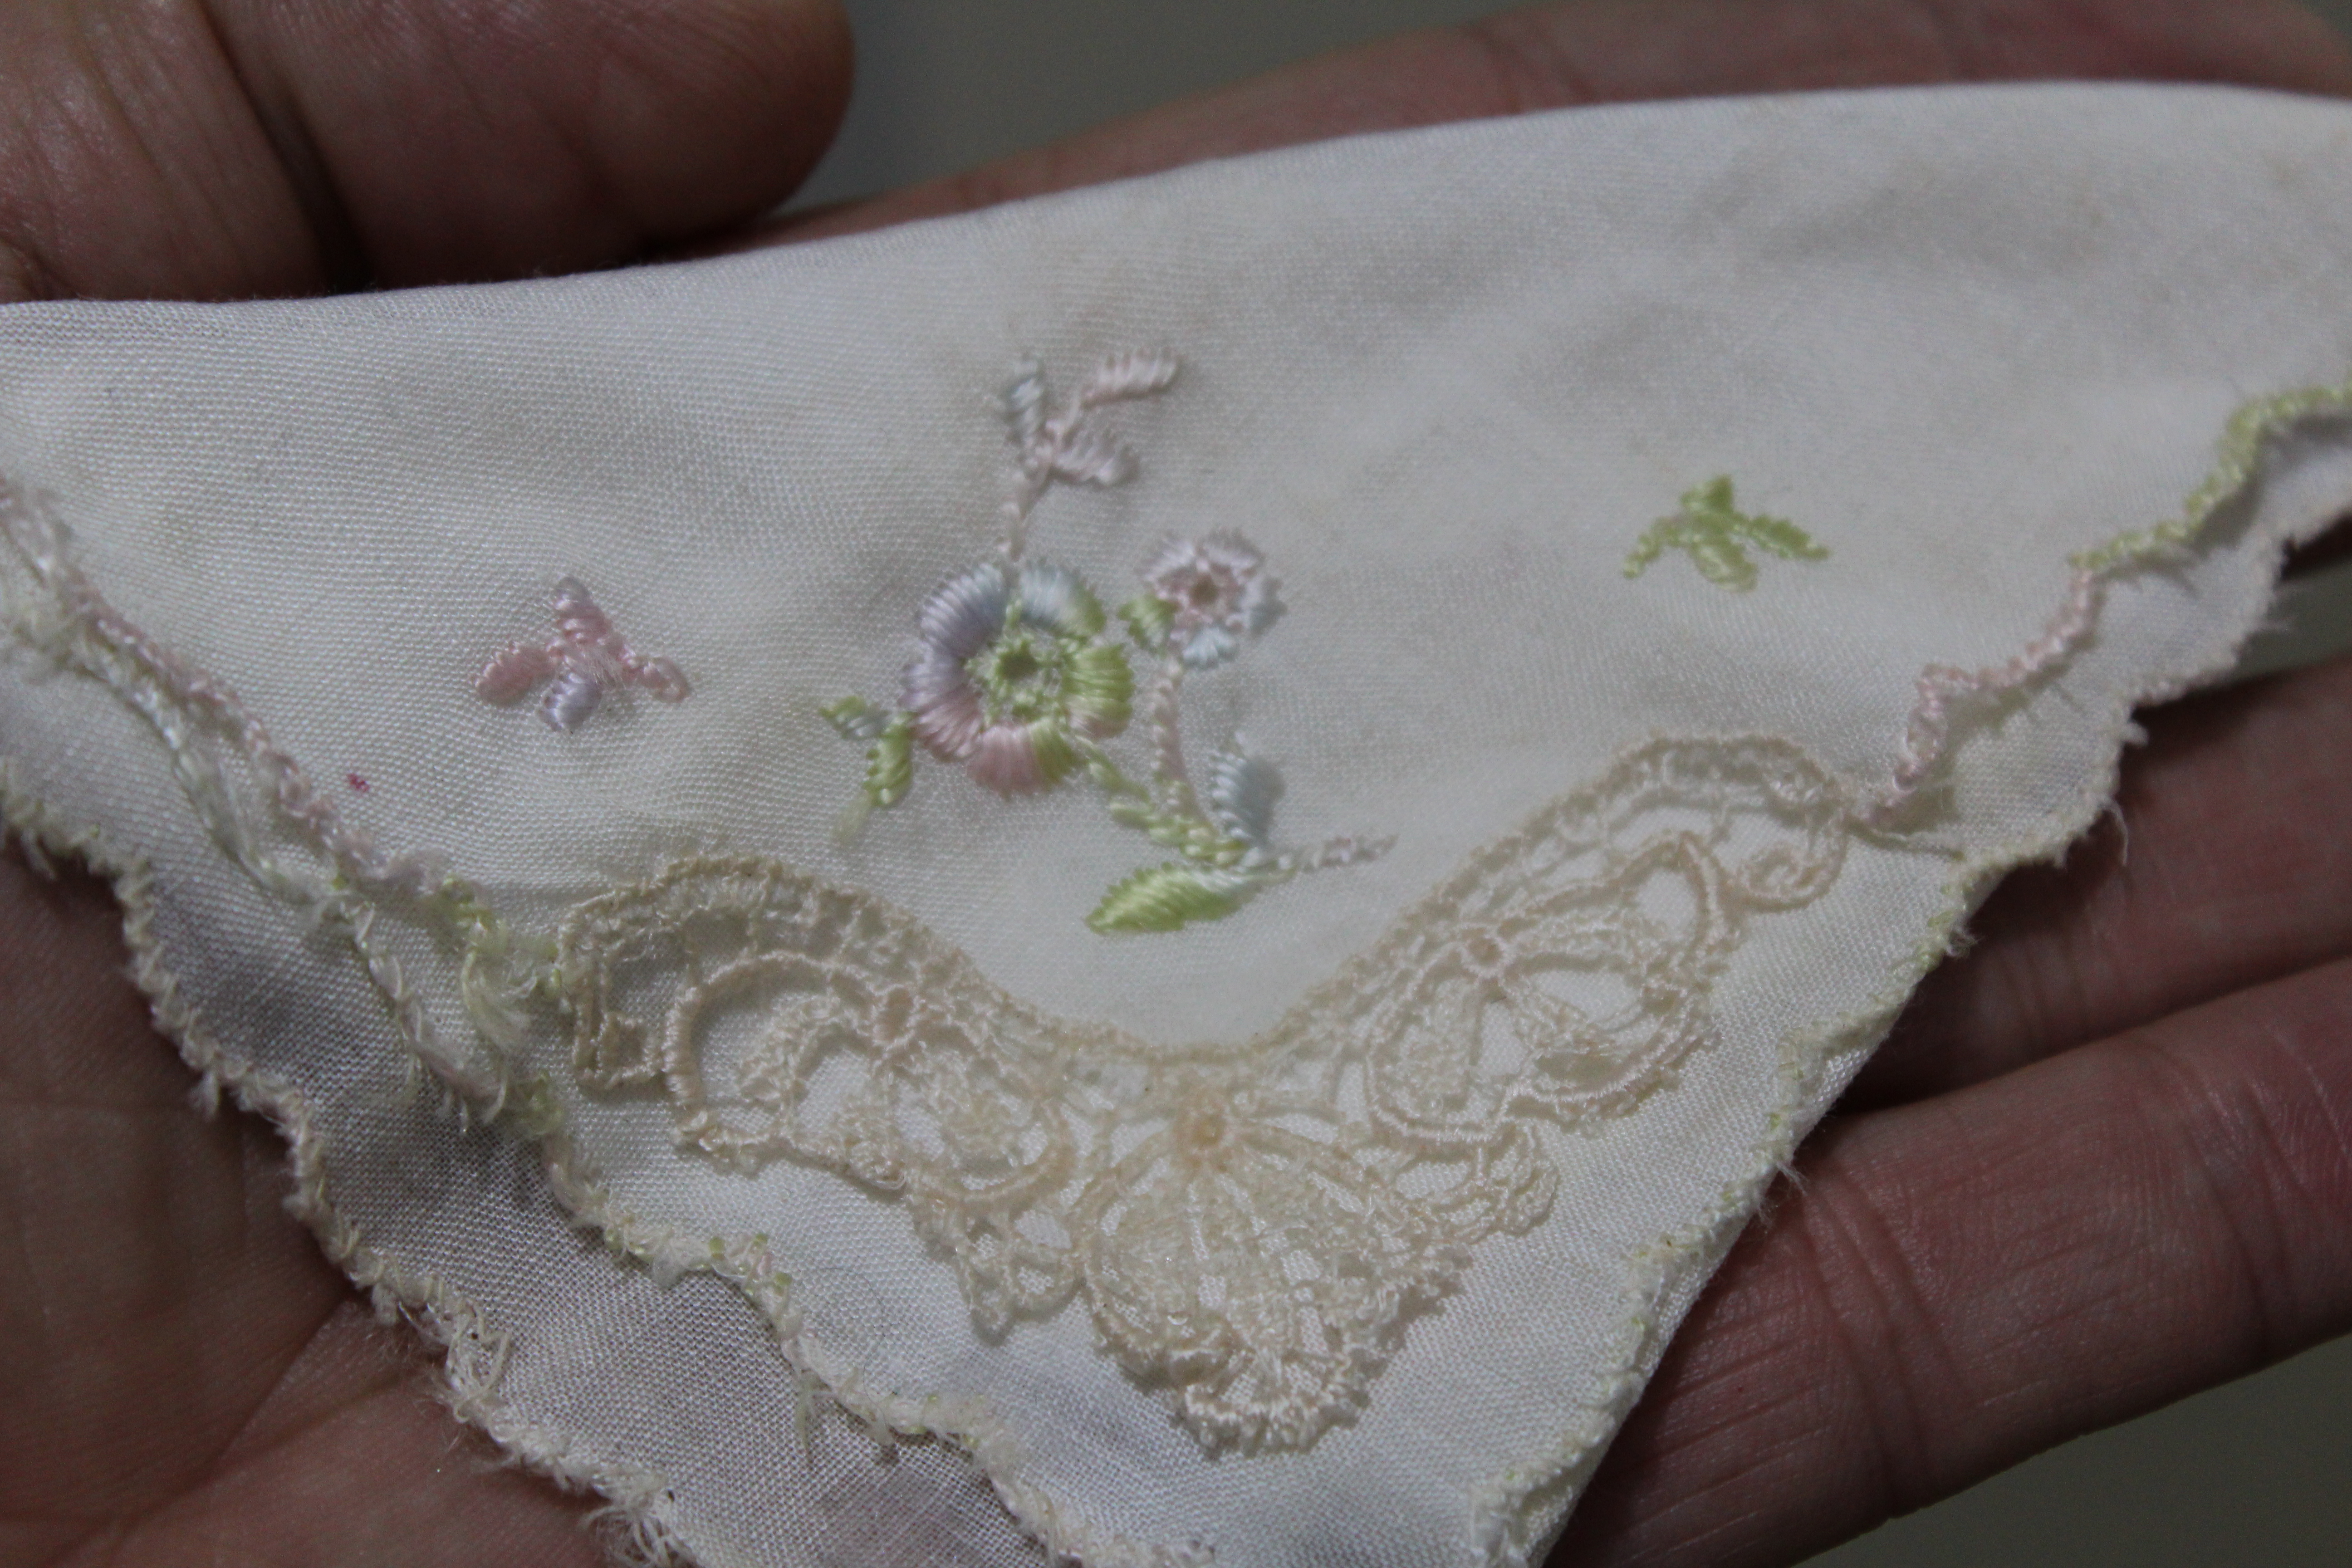 Lizzia's wedding handkerchief. Credit: Malinda van Zyl 